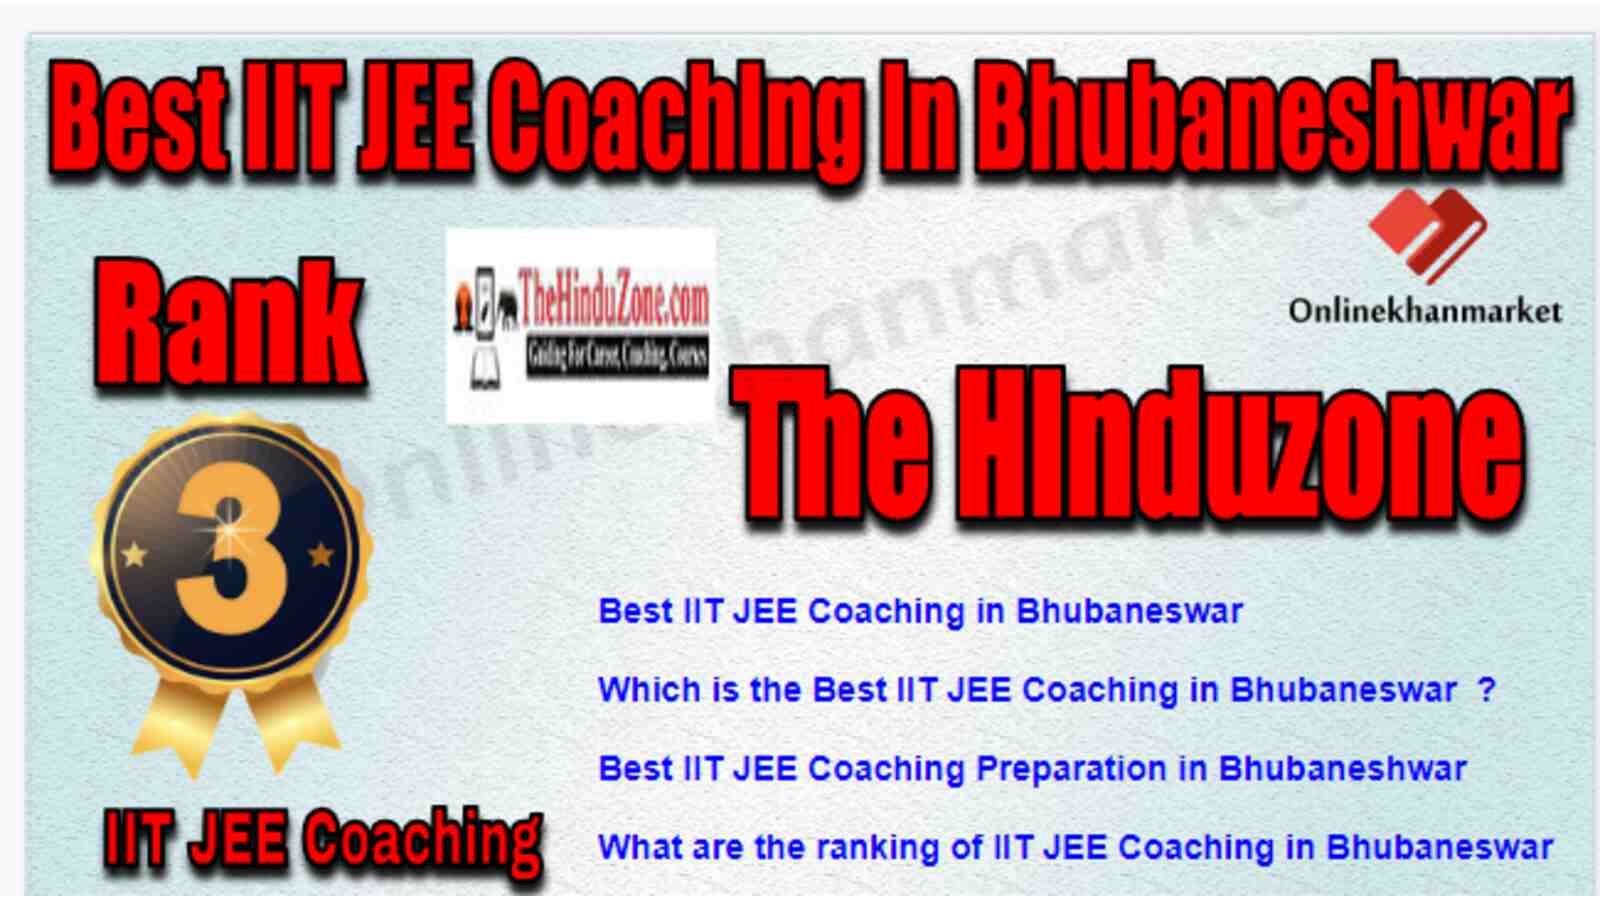 Rank 3 Best IIT JEE Coaching in Bhubaneshwar